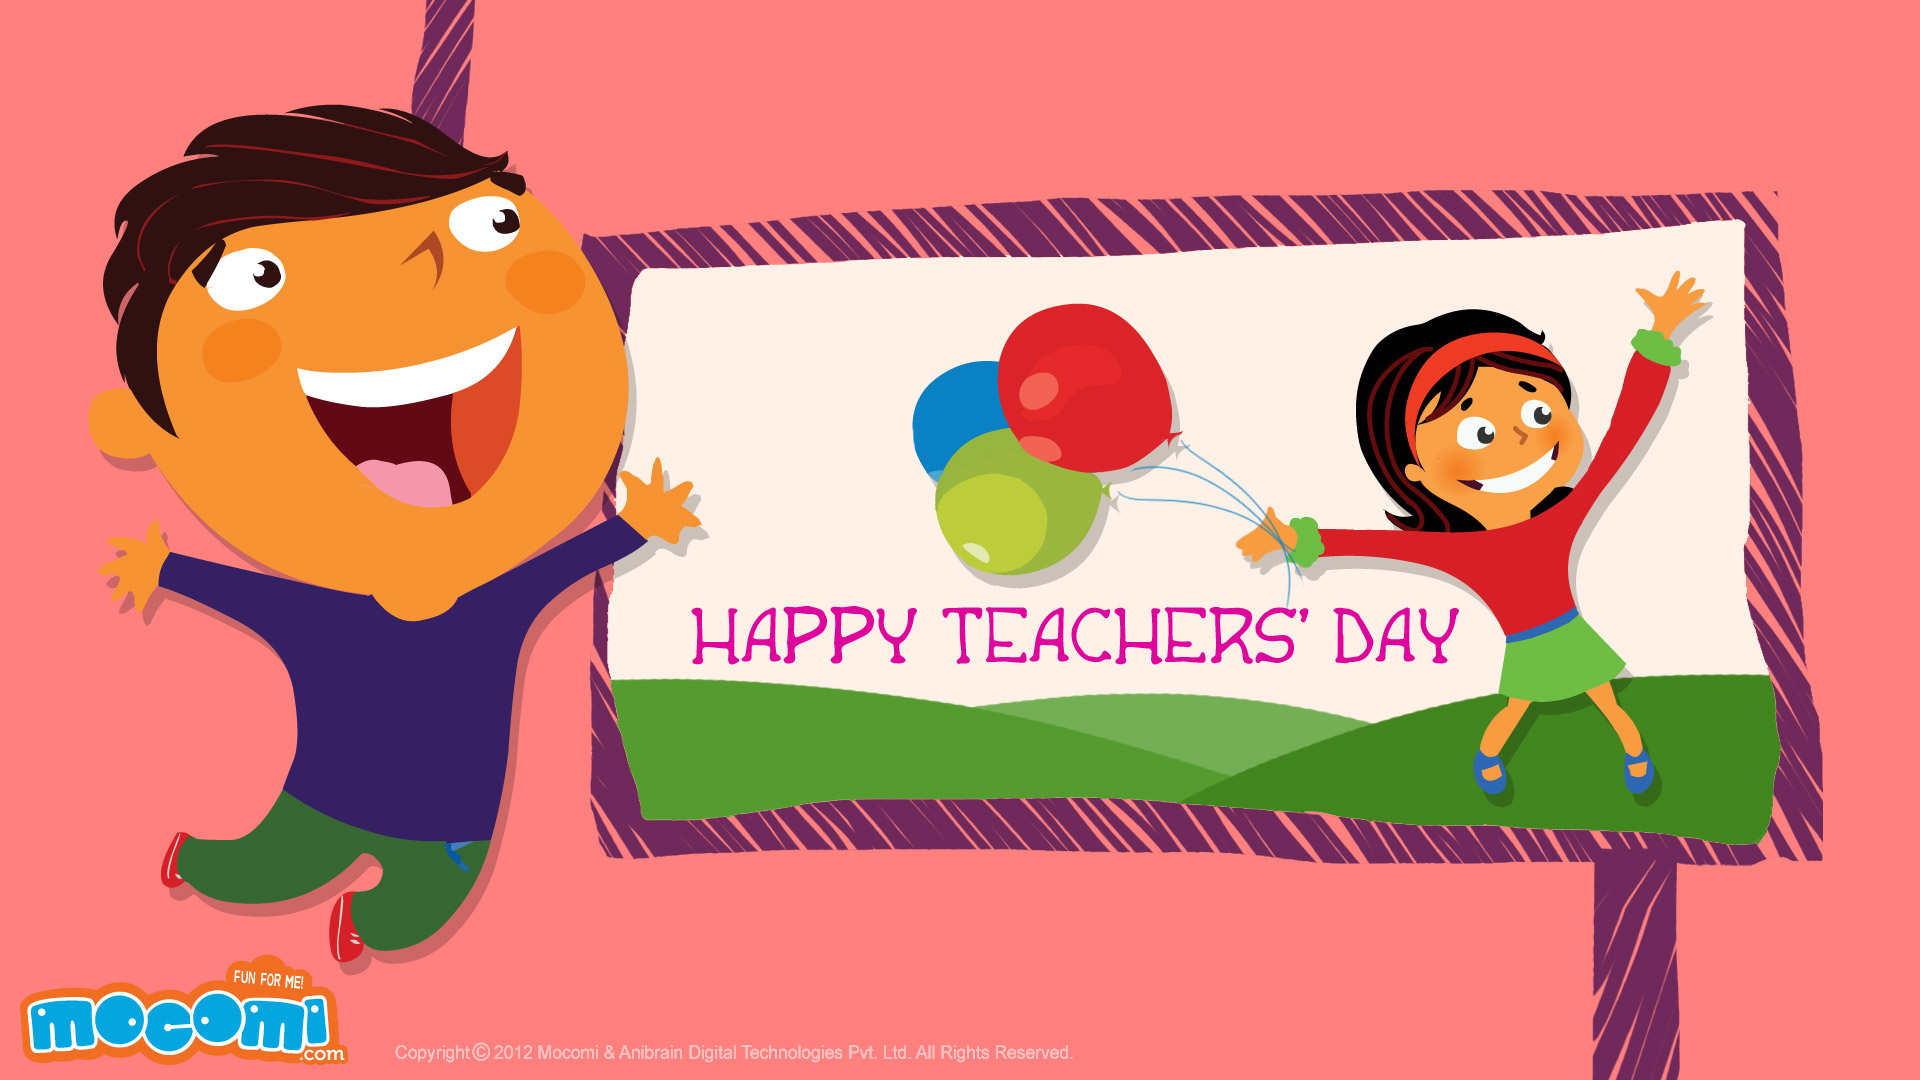 Happy Teachers’ Day! 03